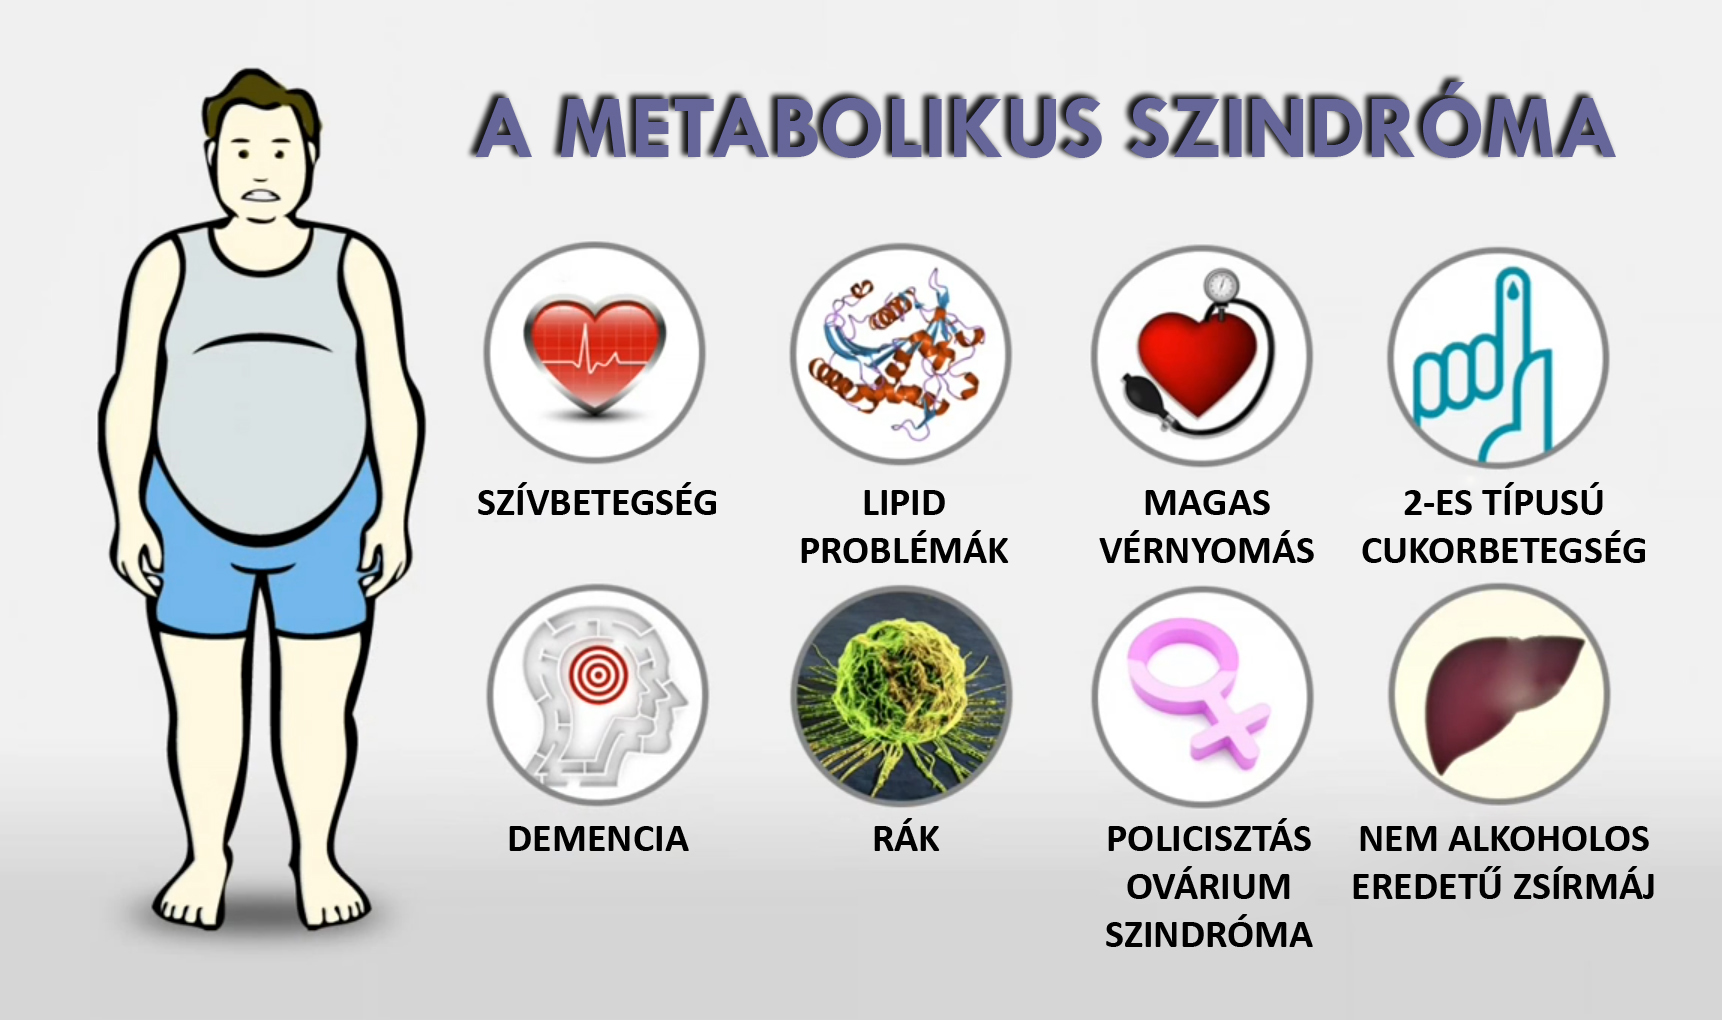 Metabolikus szindróma tünetei és kezelése - HáziPatika